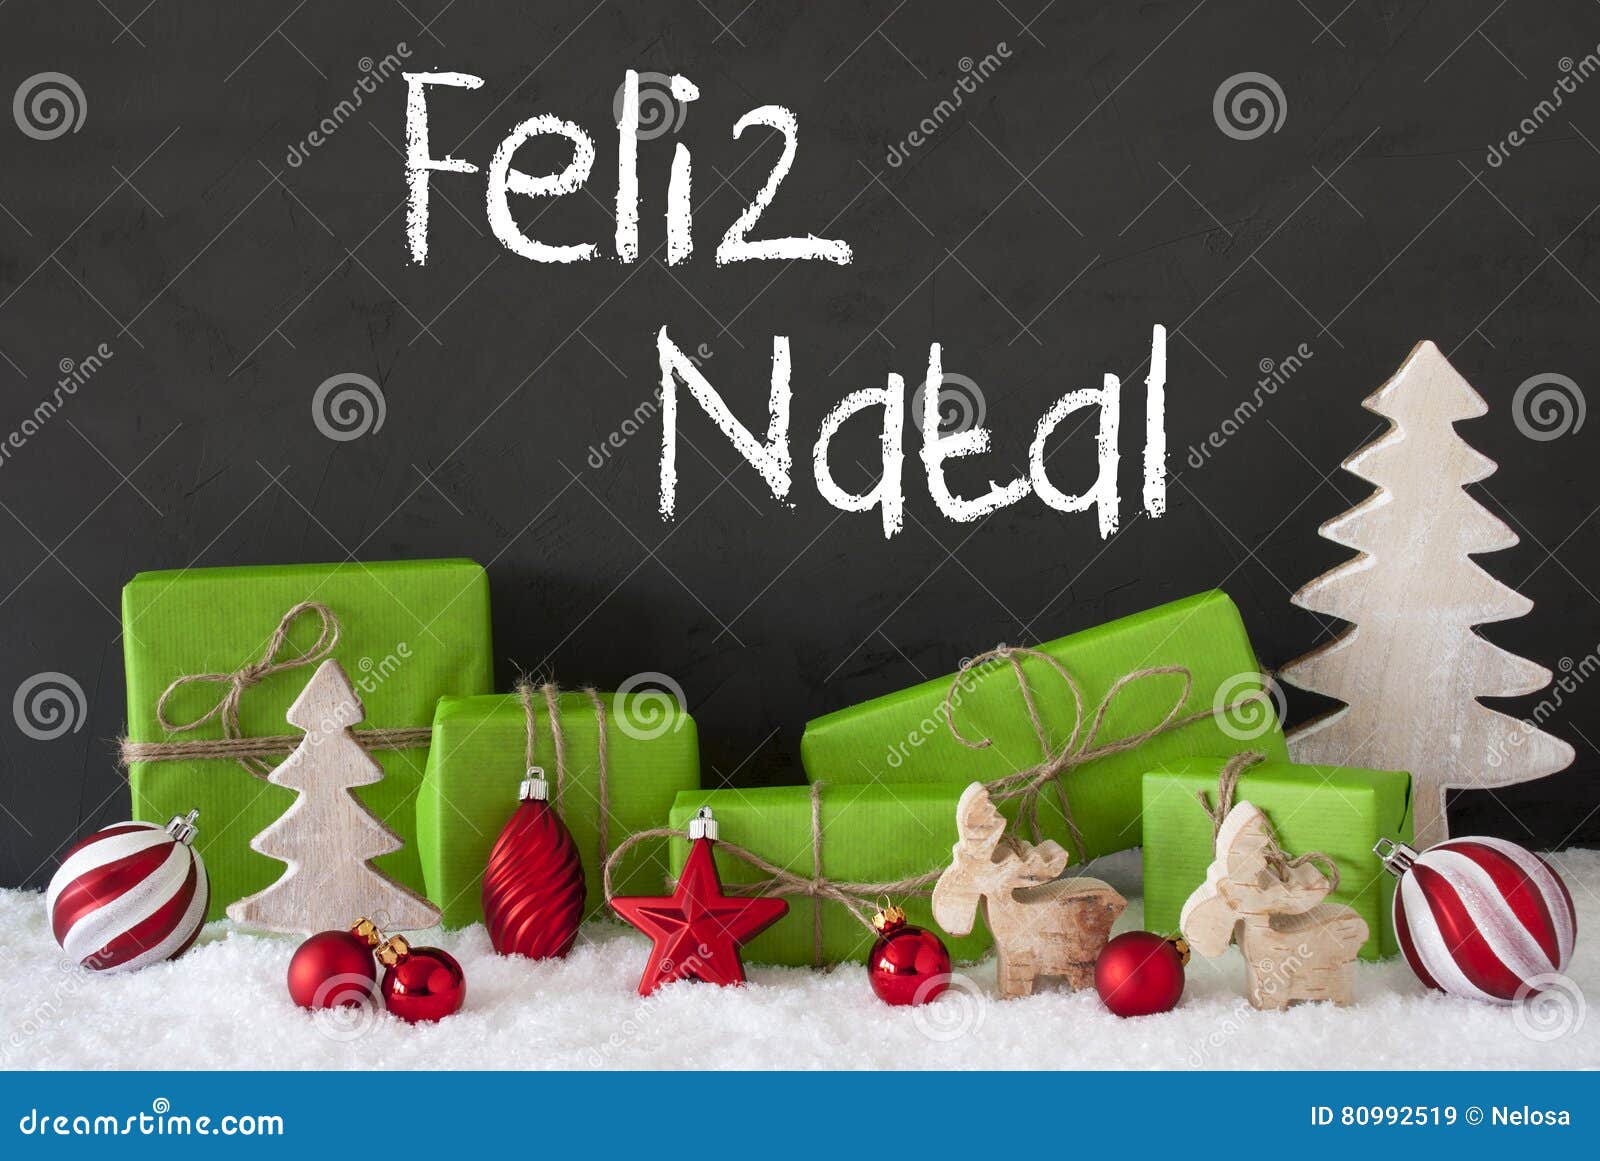 decoration, cement, snow, feliz natal means merry christmas